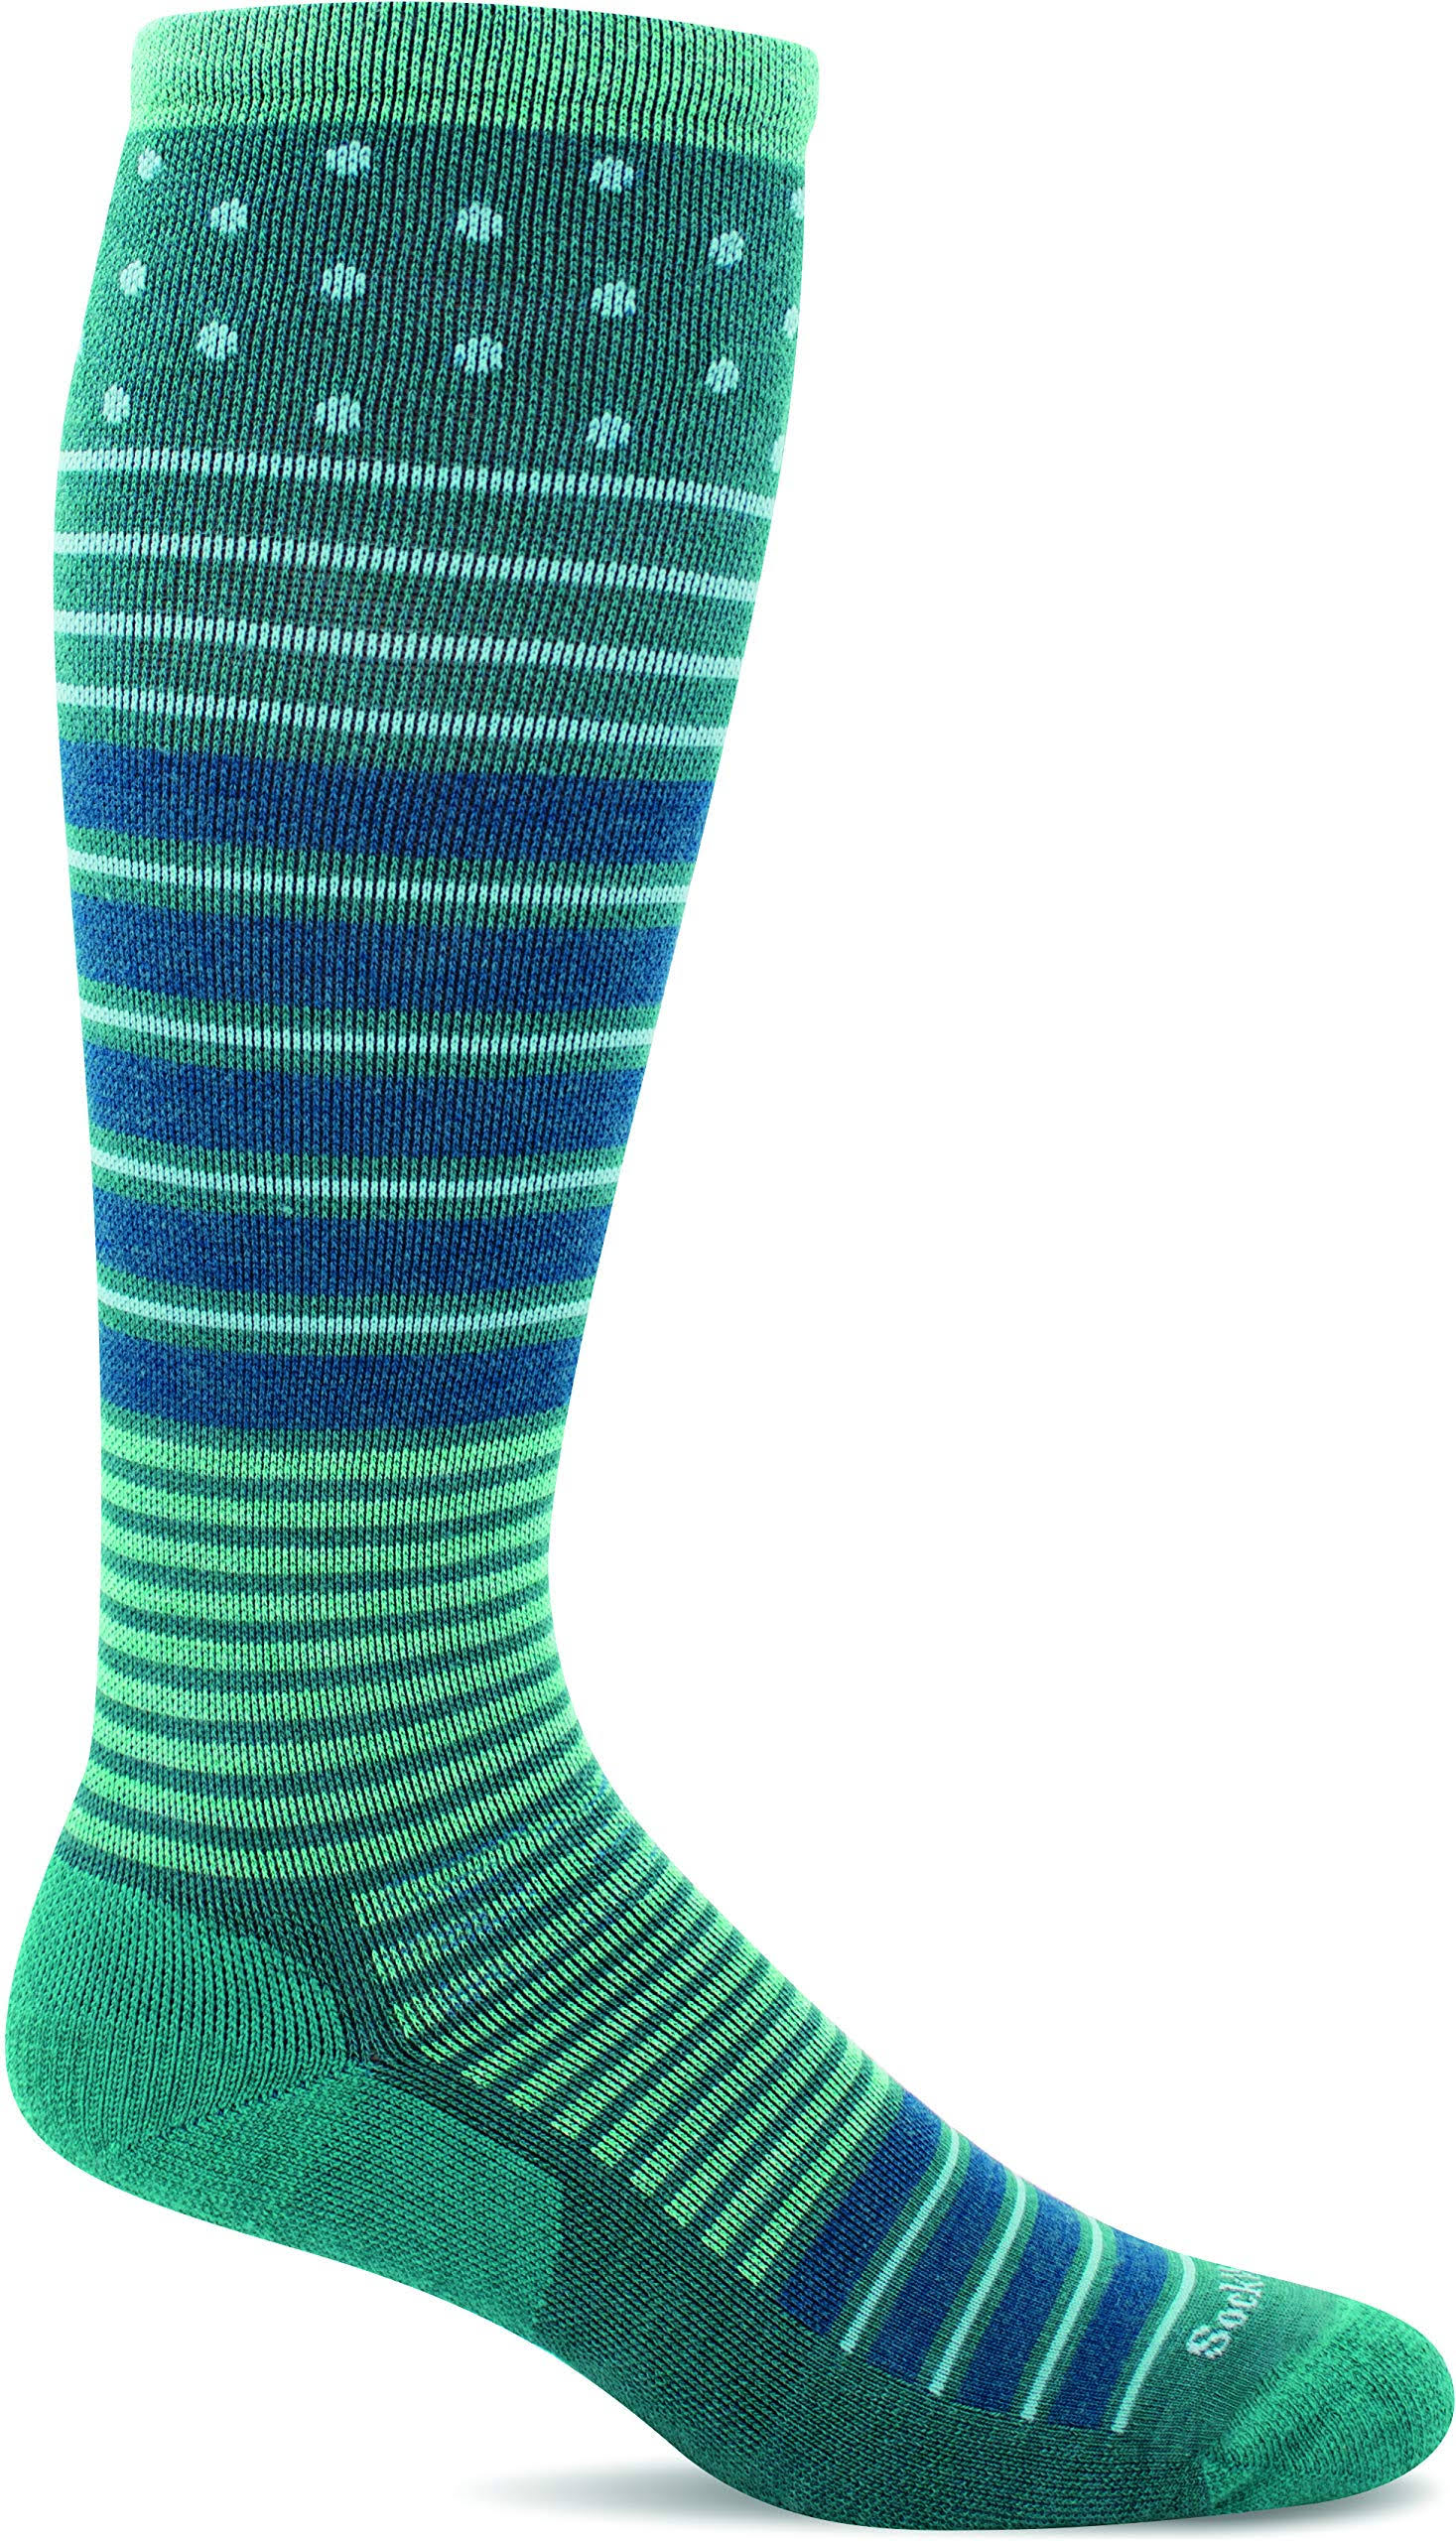 Sockwell Women's Twister Firm Compression Socks / MD/LG / Jade